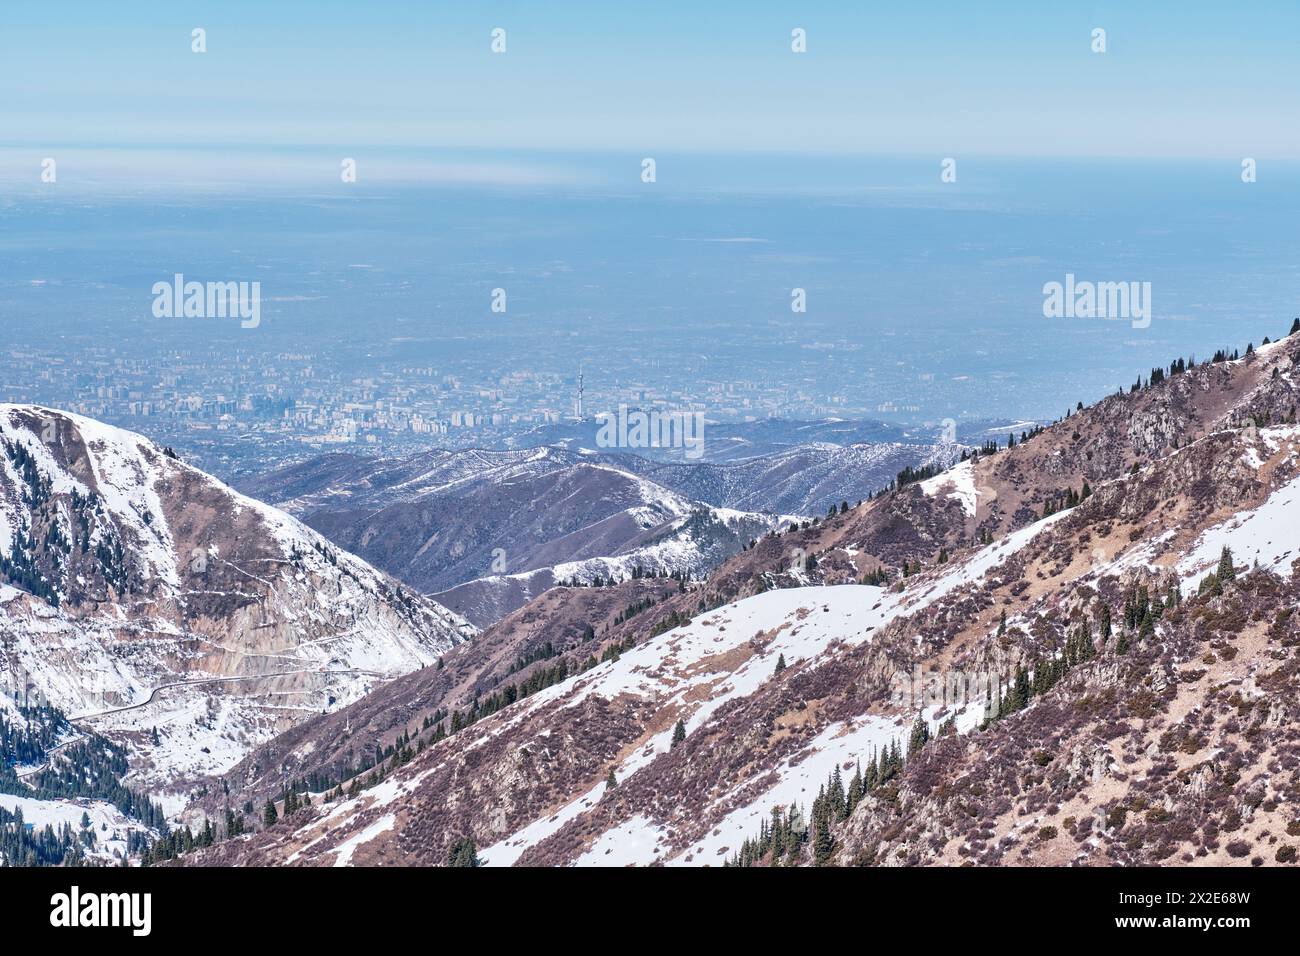 Chaîne de montagnes de TRANS-Ili Alatau près d'Almaty, Kazakhstan. Paysage printanier. Restes de neige sur les pistes. Paysage urbain. Copier l'espace Banque D'Images